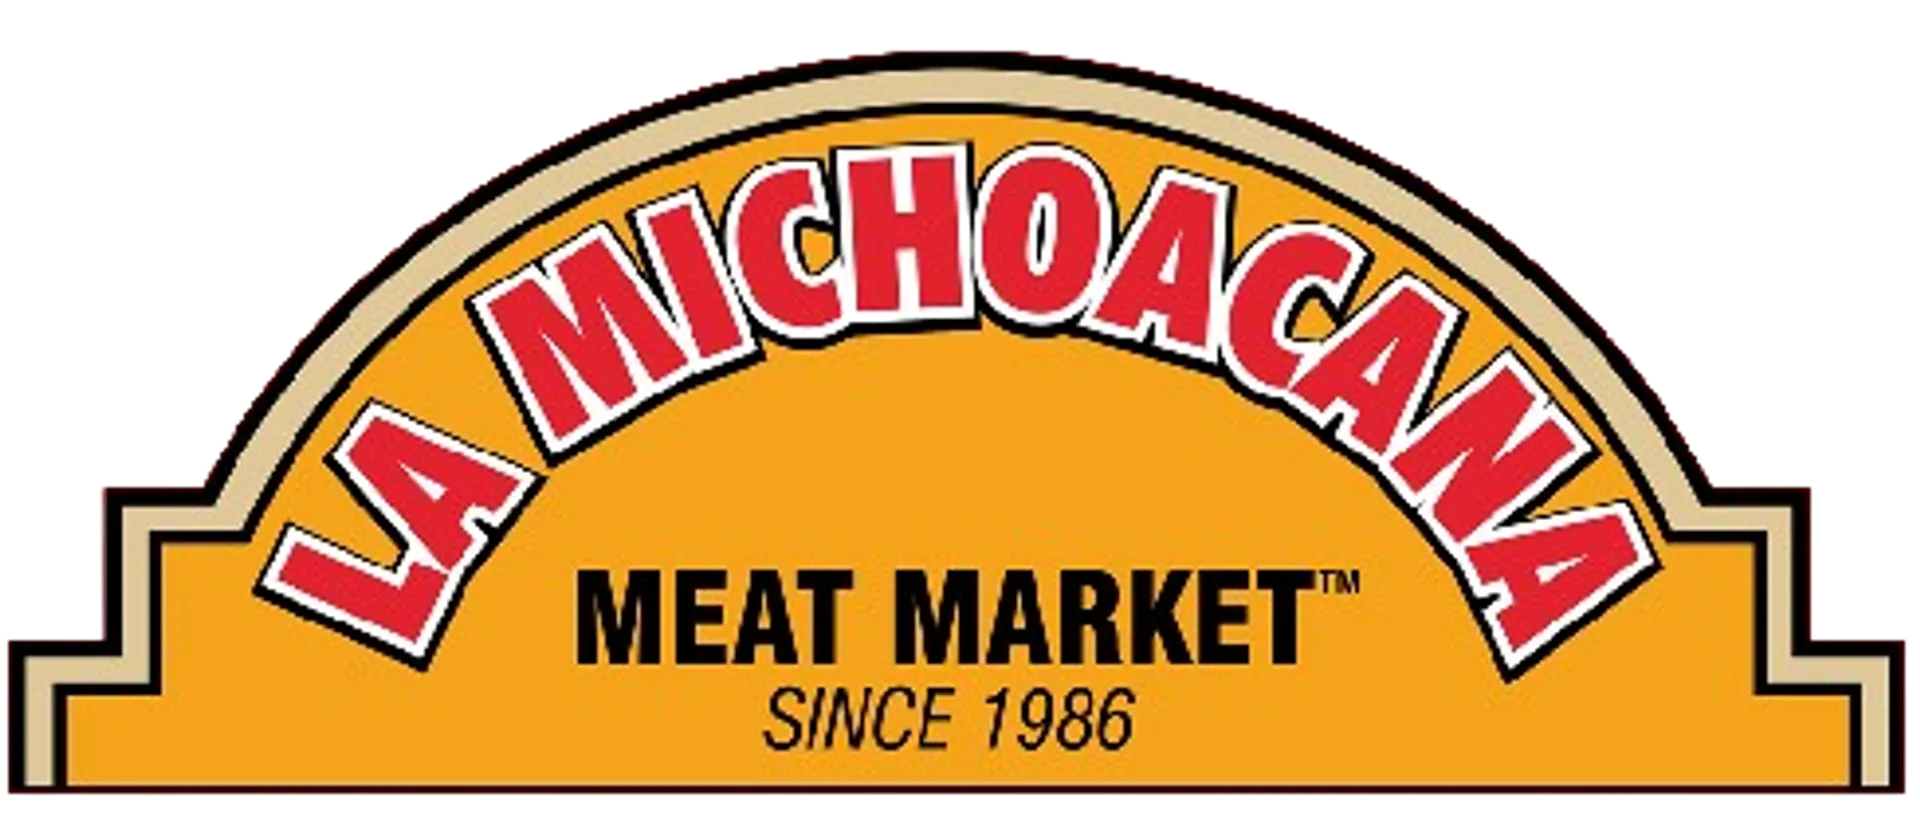 LA MICHOACANA MEAT MARKET logo de catálogo